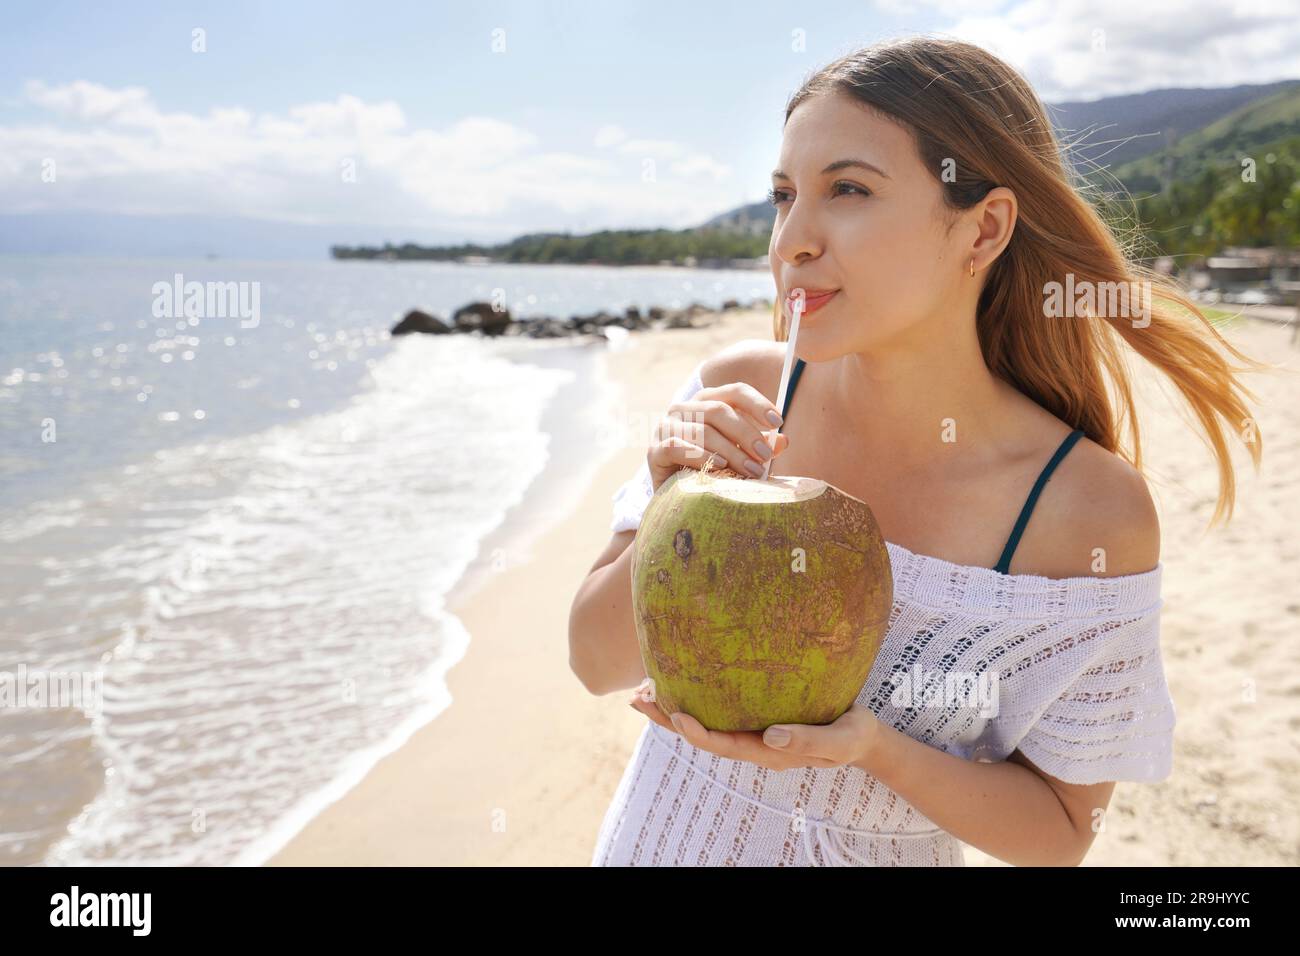 Ragazza brasiliana che beve acqua di cocco fresca sulla spiaggia. Concezione rinfrescante e naturale di cocco verde. Foto Stock